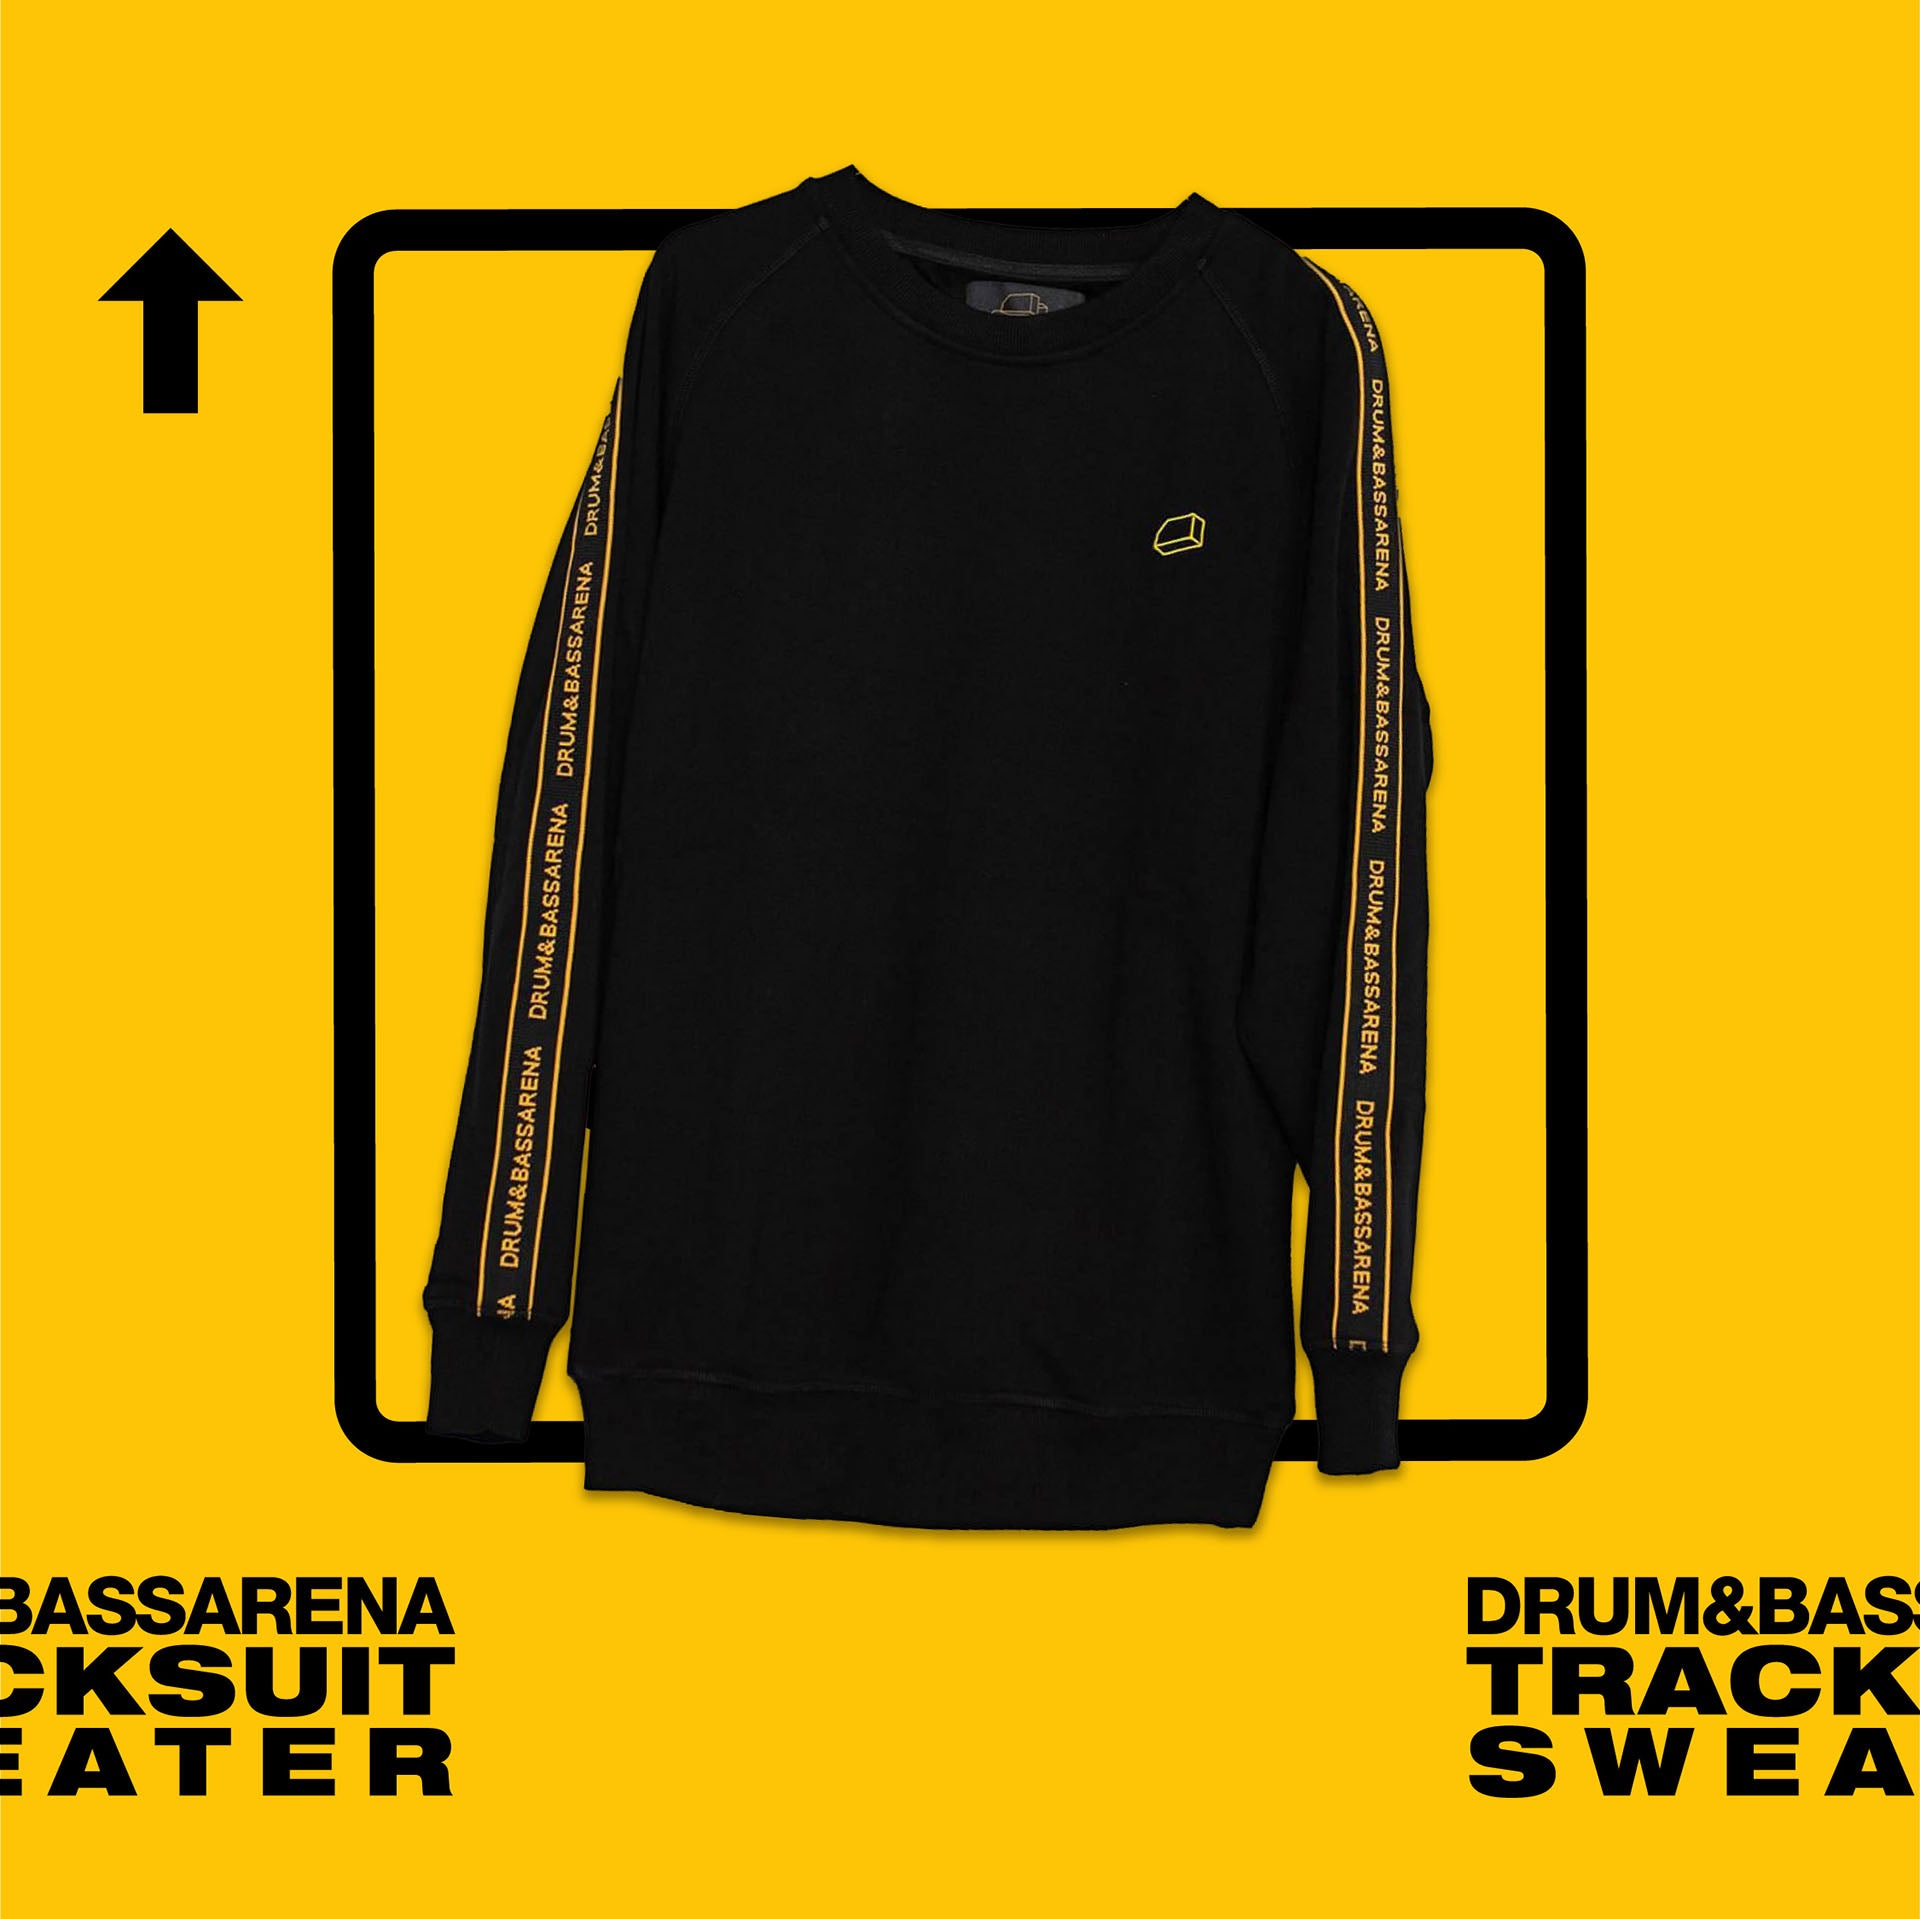 Drum&BassArena Tracksuit Sweater (Unisex)